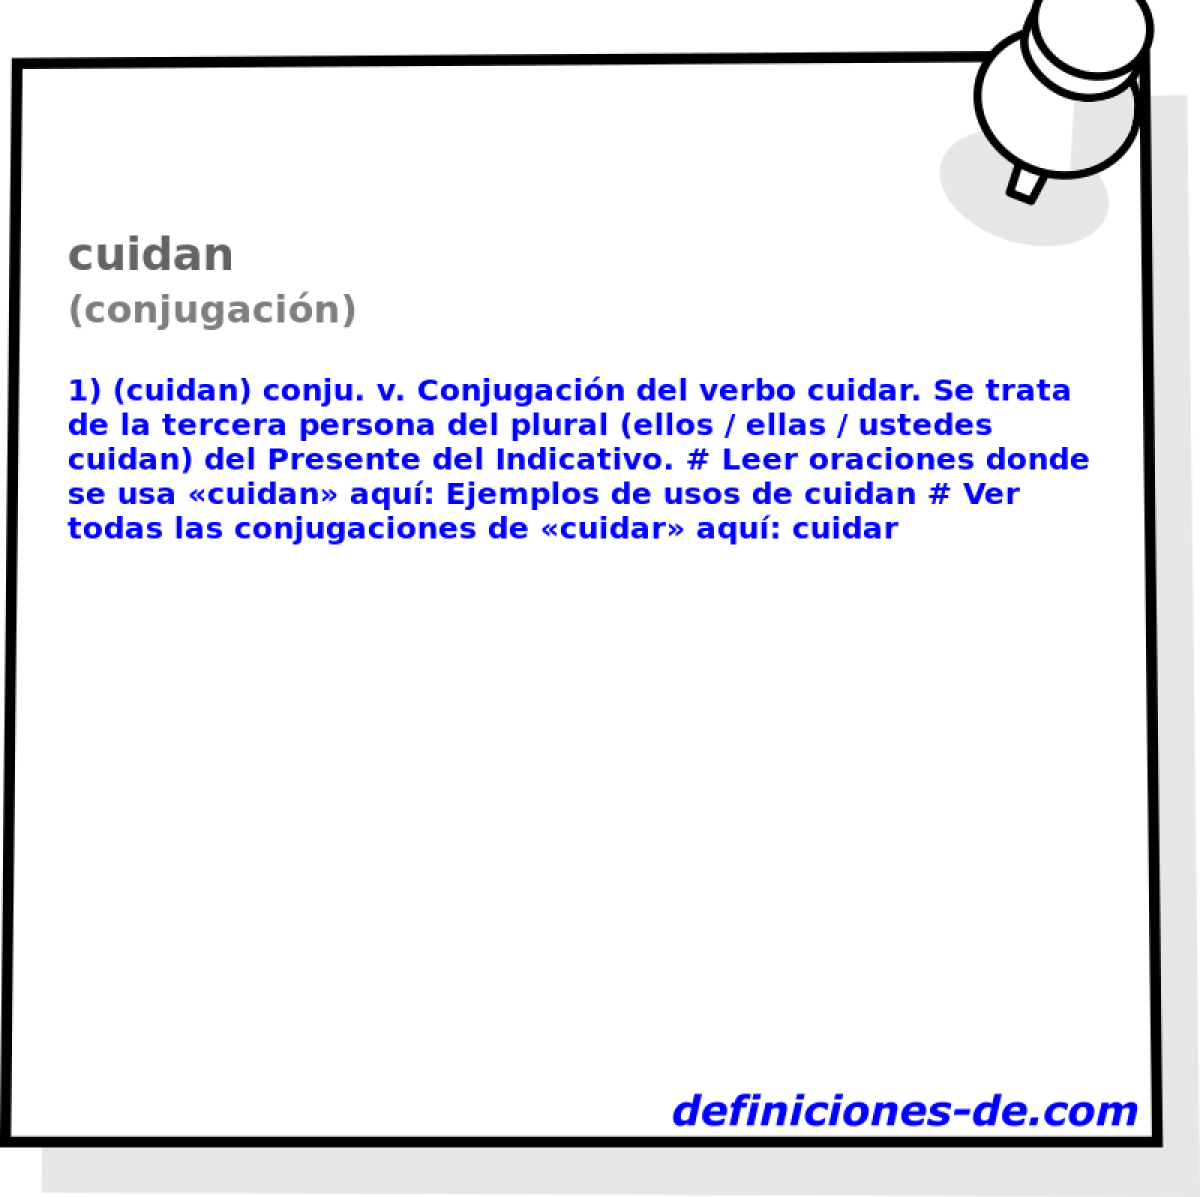 cuidan (conjugacin)